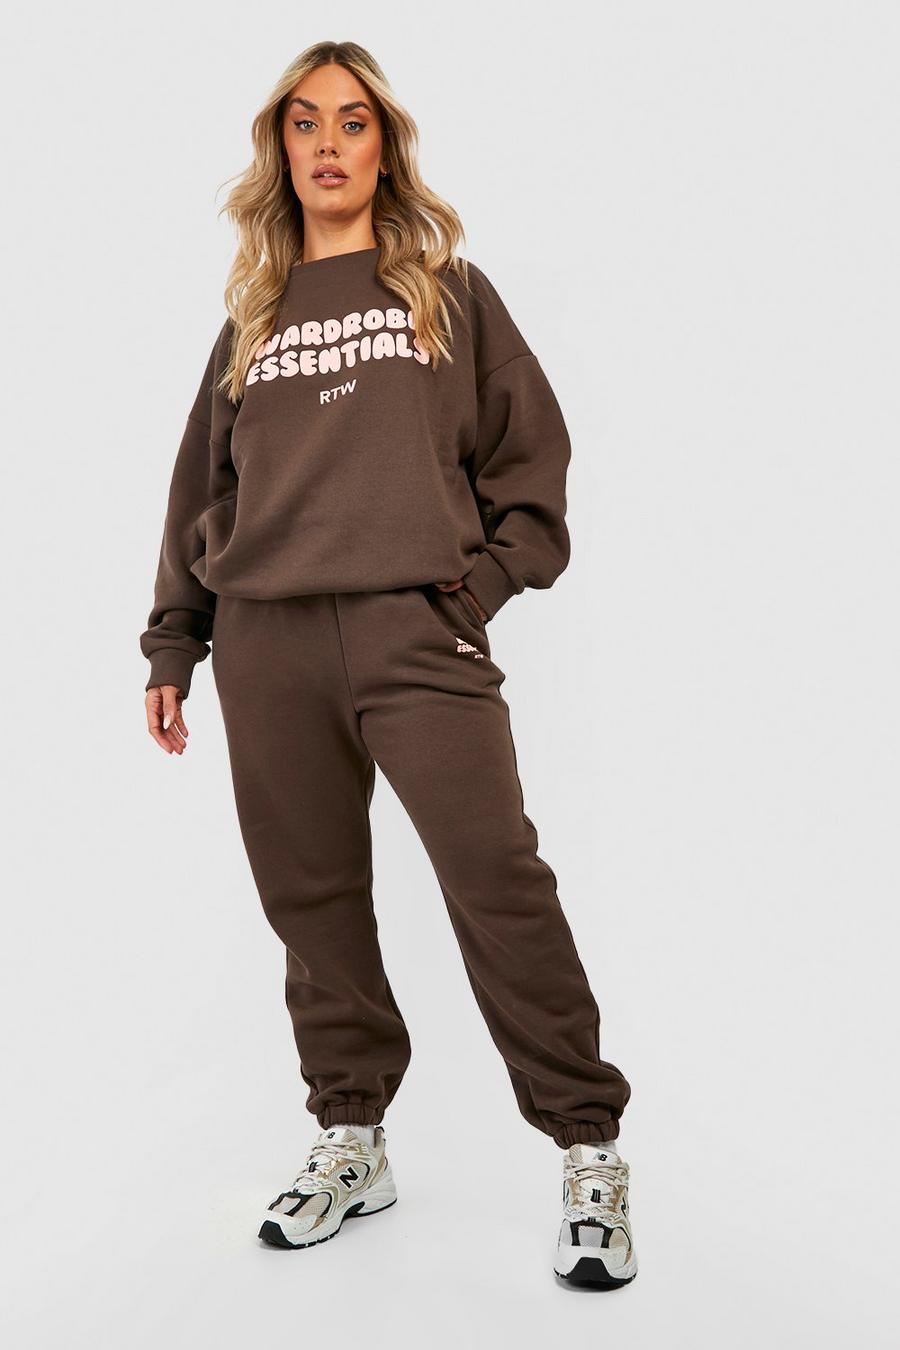 Plus Sweatshirt-Trainingsanzug mit Wardrobe Essentials Slogan, Chocolate brown